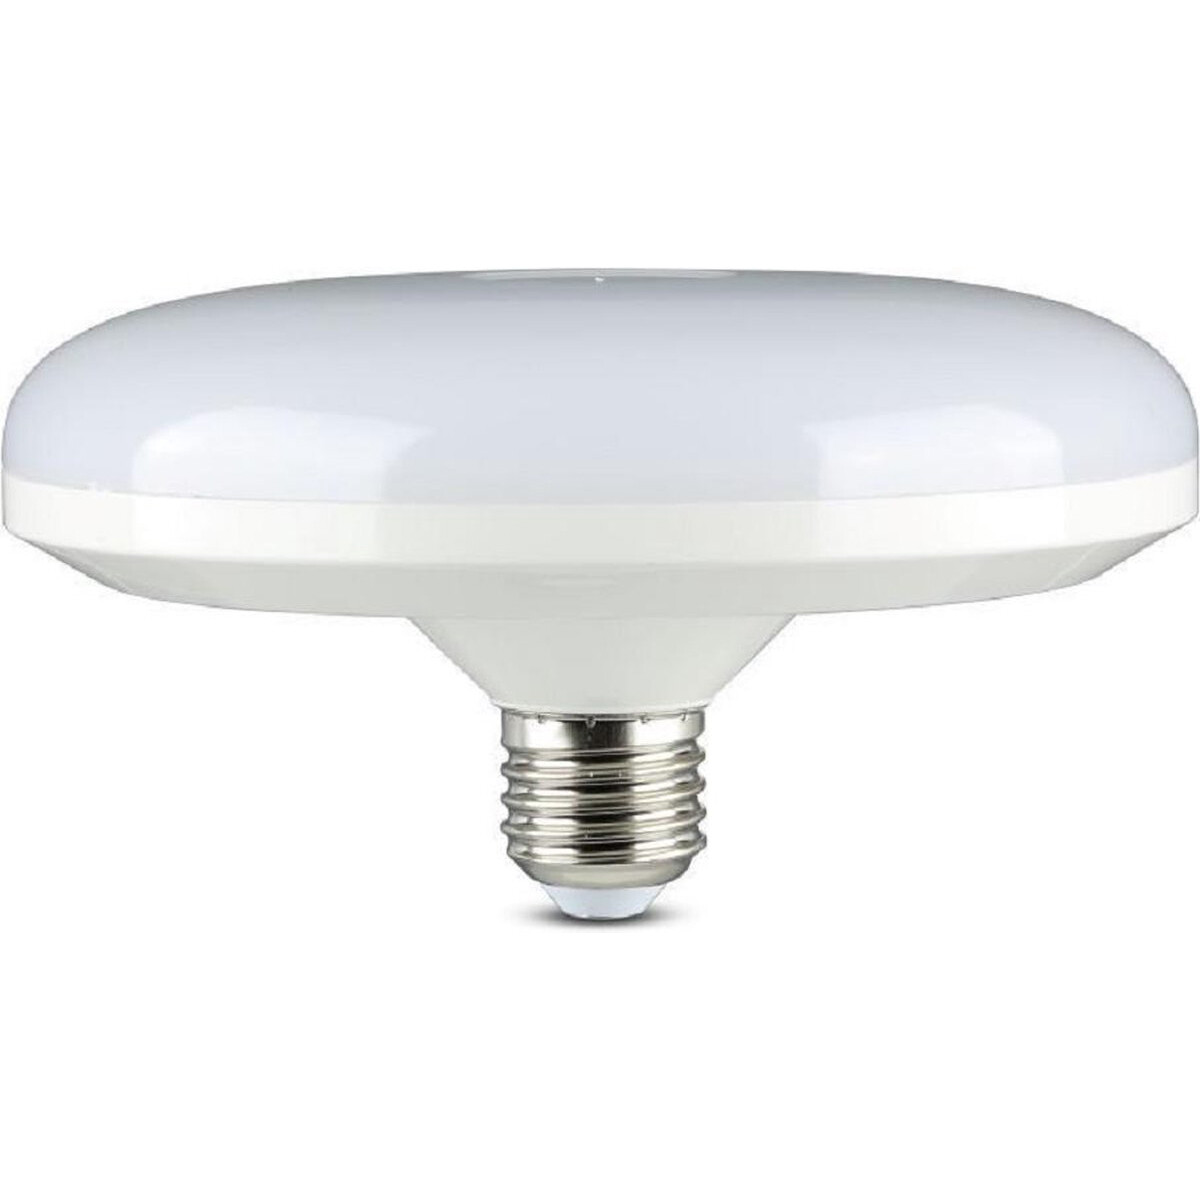 LED Lamp - Viron Unta - UFO F250 - E27 Fitting - 36W - Helder/Koud Wit 6400K - Wit - SAMSUNG LEDs